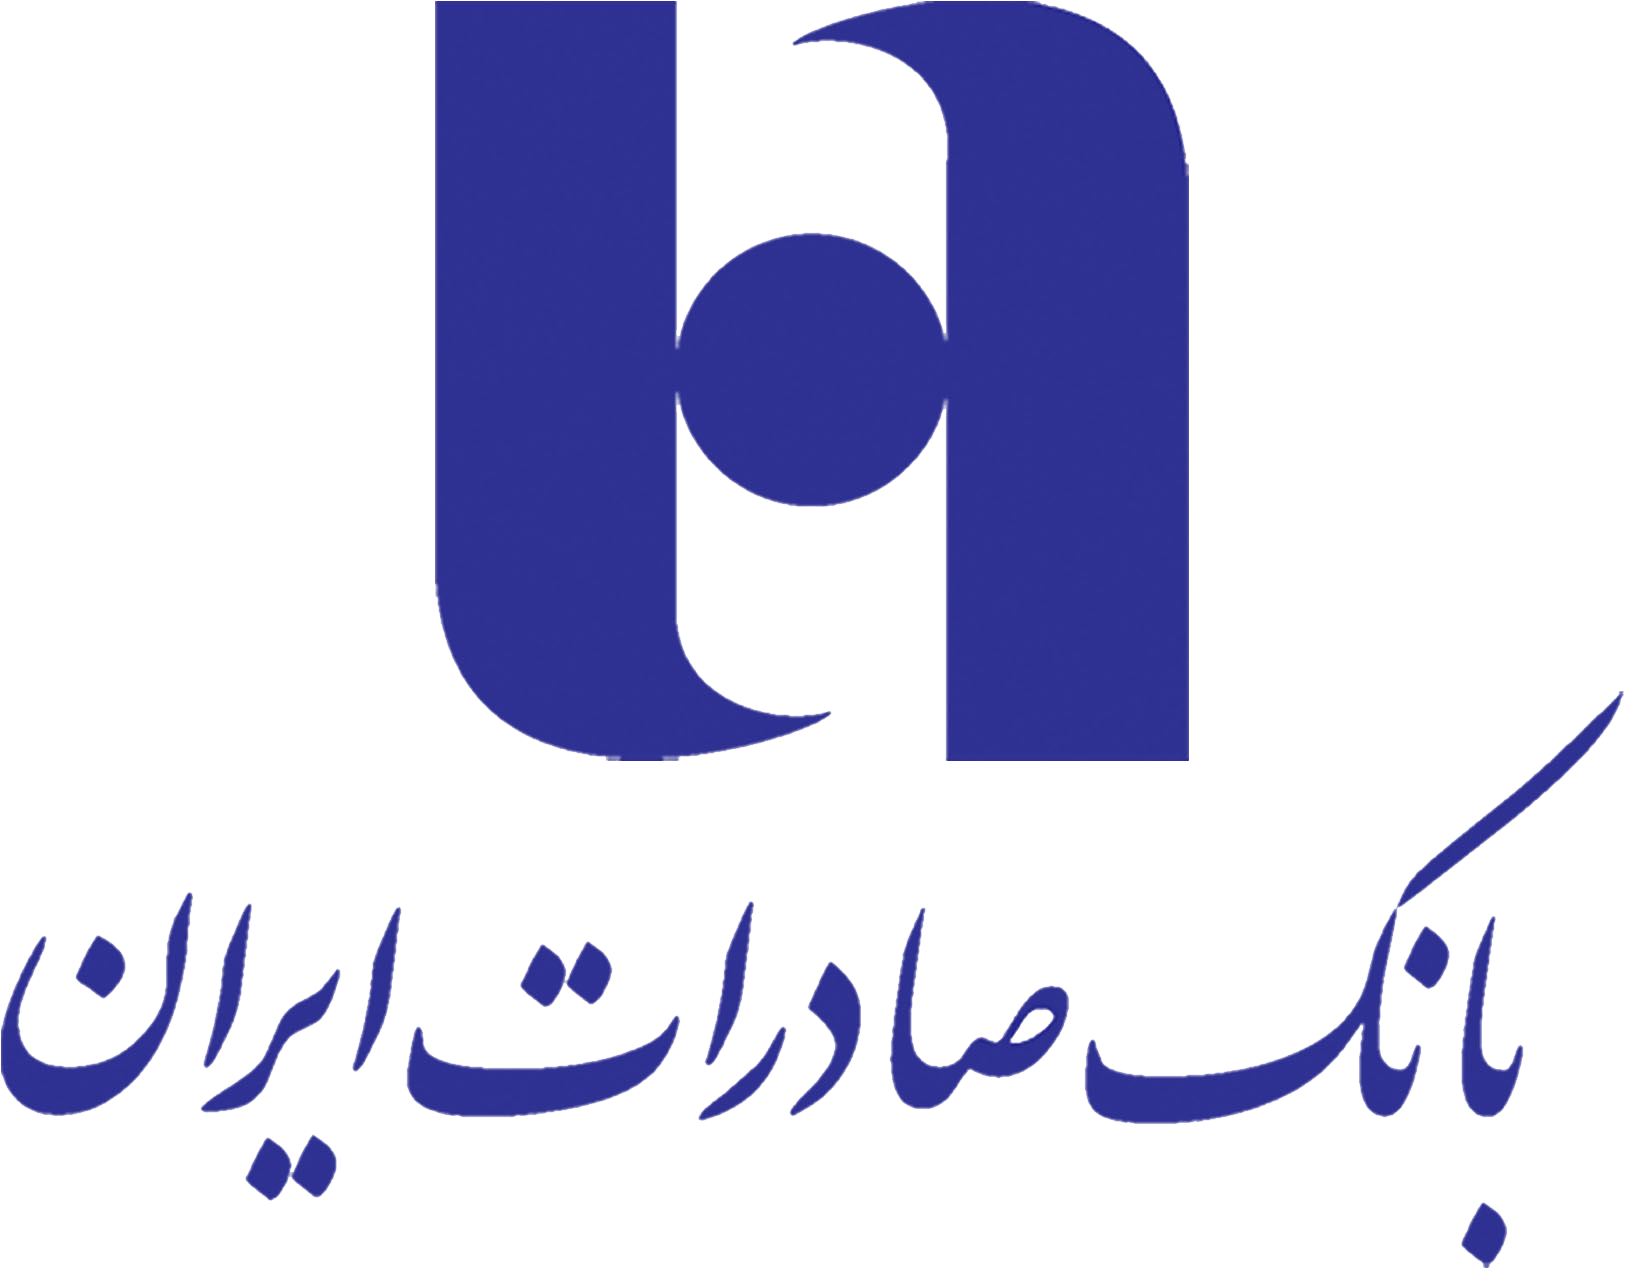 Electronic Banking Cliparts 7, Buy Clip Art - Bank Saderat Iran Logo (1654x1654)